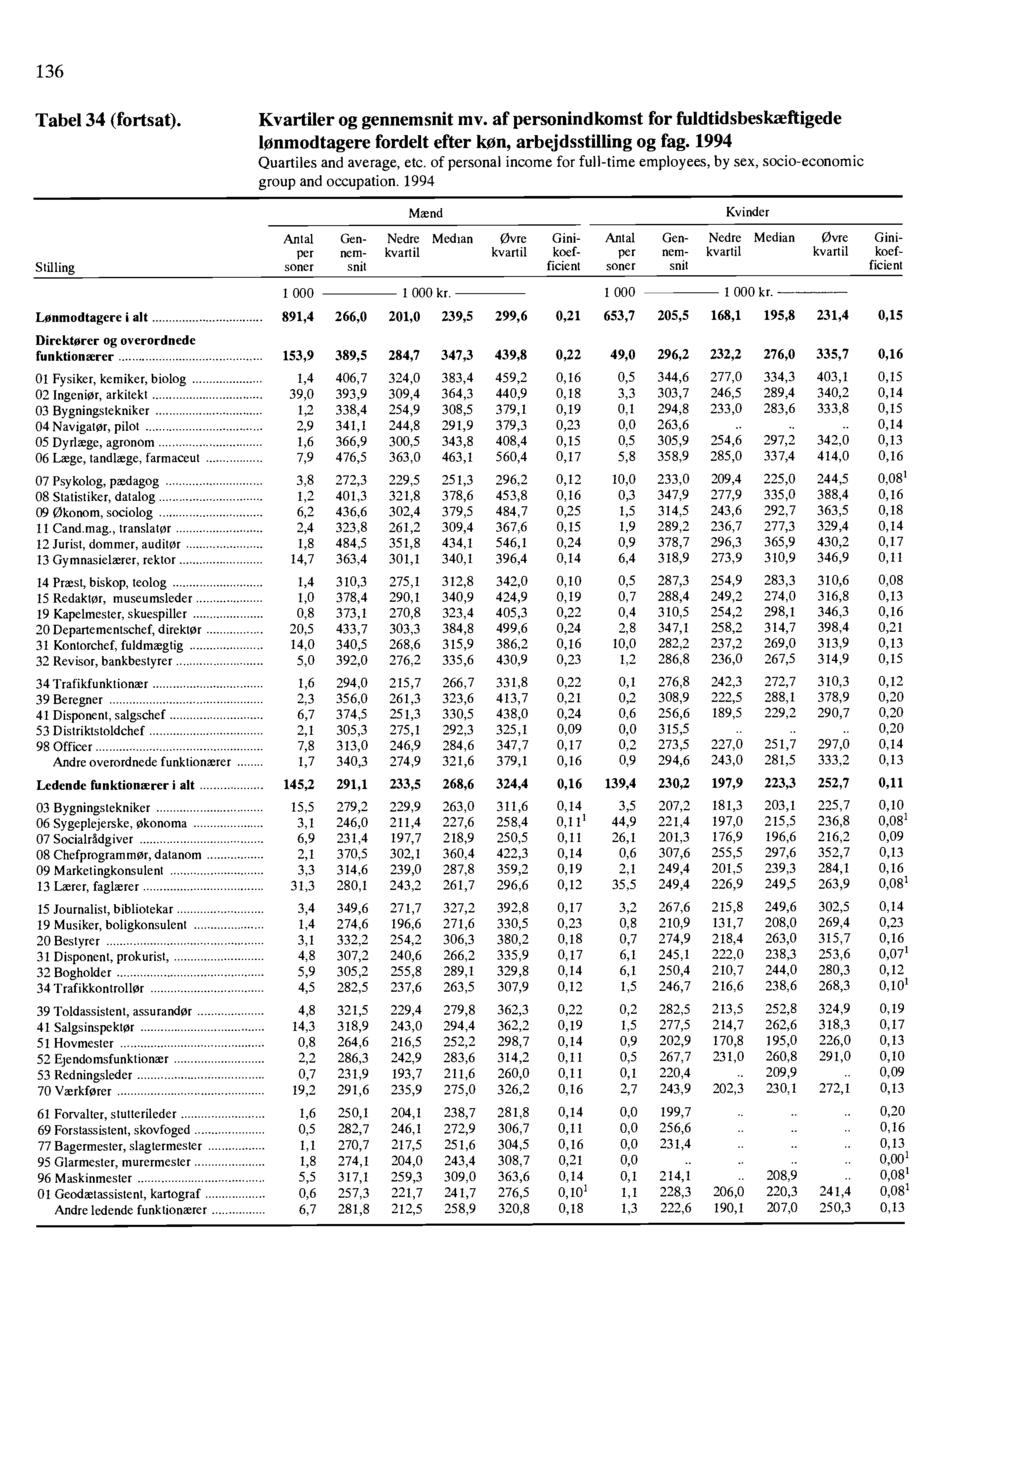 136 Tabel 34 (fortsat) Kvartiler og gennemsnit mv of personindkomst for fuldtidsbeskæftigede lonmodtagere fordelt efter kiln, arbejdsstilling og fag 1994 Quartiles and average, etc of personal income